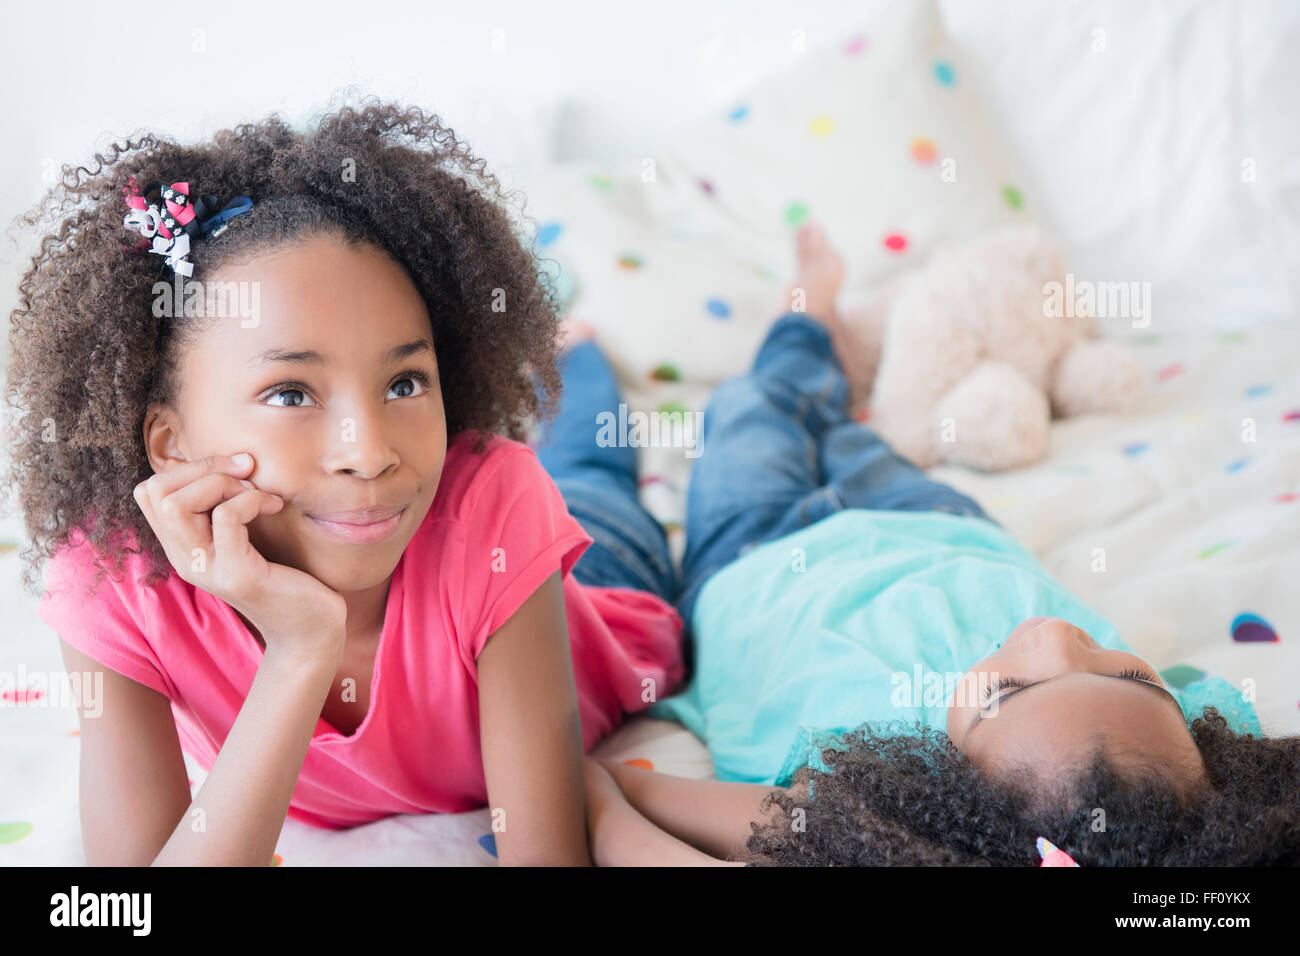 Gemischte Rassen Schwestern auf Bett Stockfoto